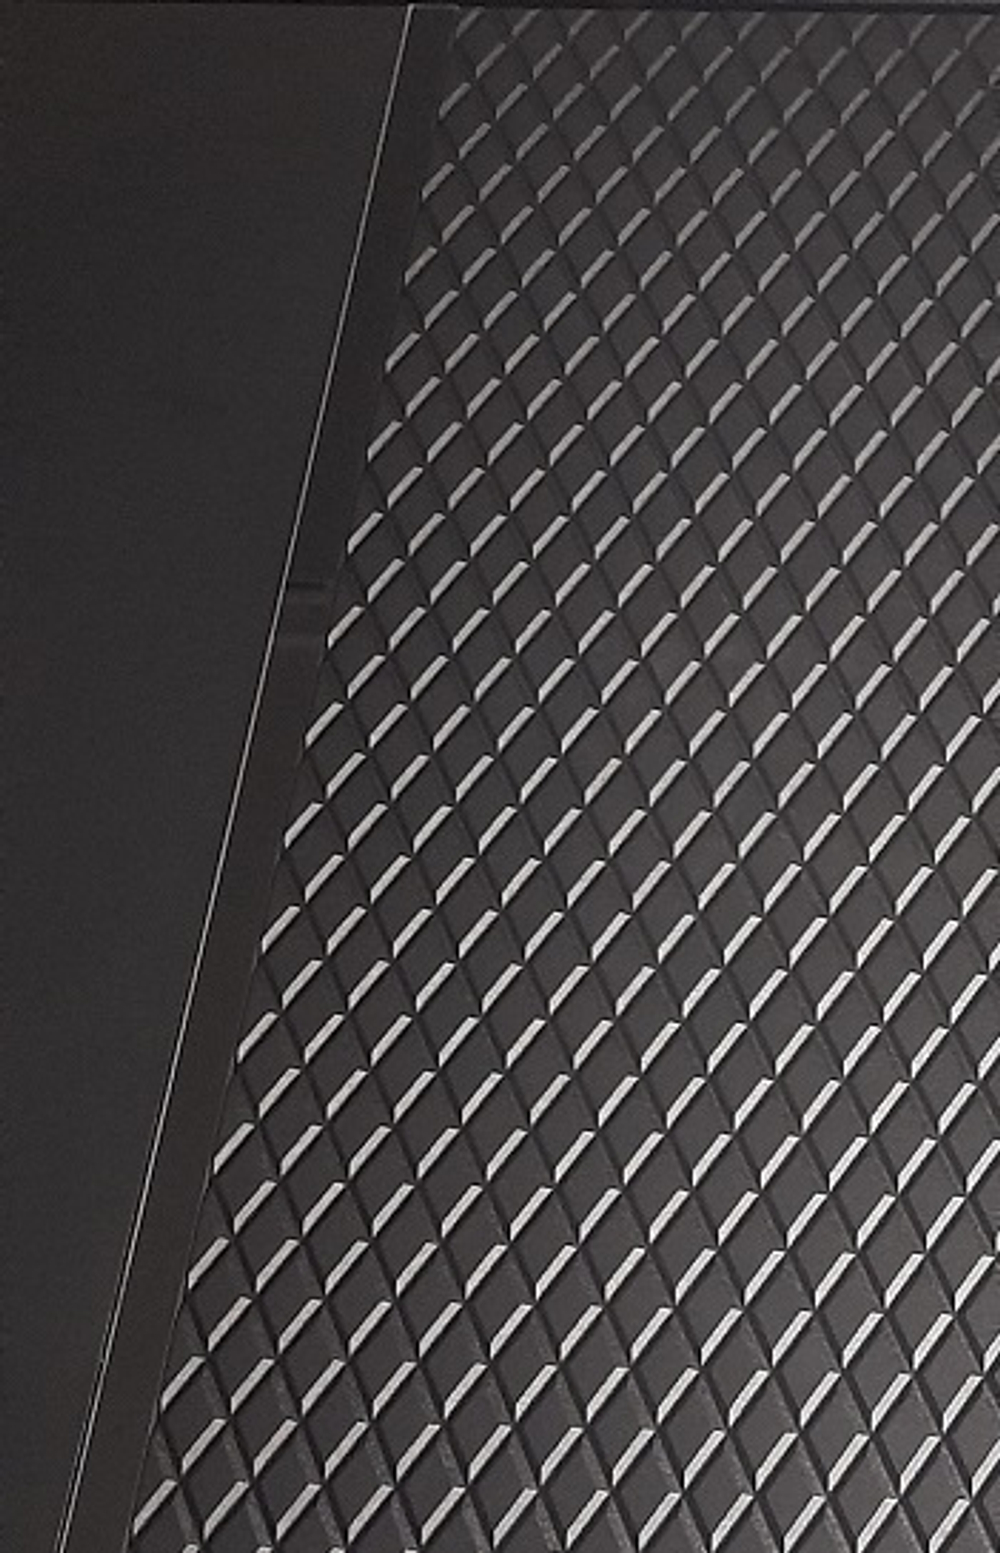 Входная металлическая дверь с зеркалом RеX (РЕКС) 25 кварц черный, фурнитура на Квадратной розетке, цвет хром/ Лучи ФЛ-291 Силк сноу